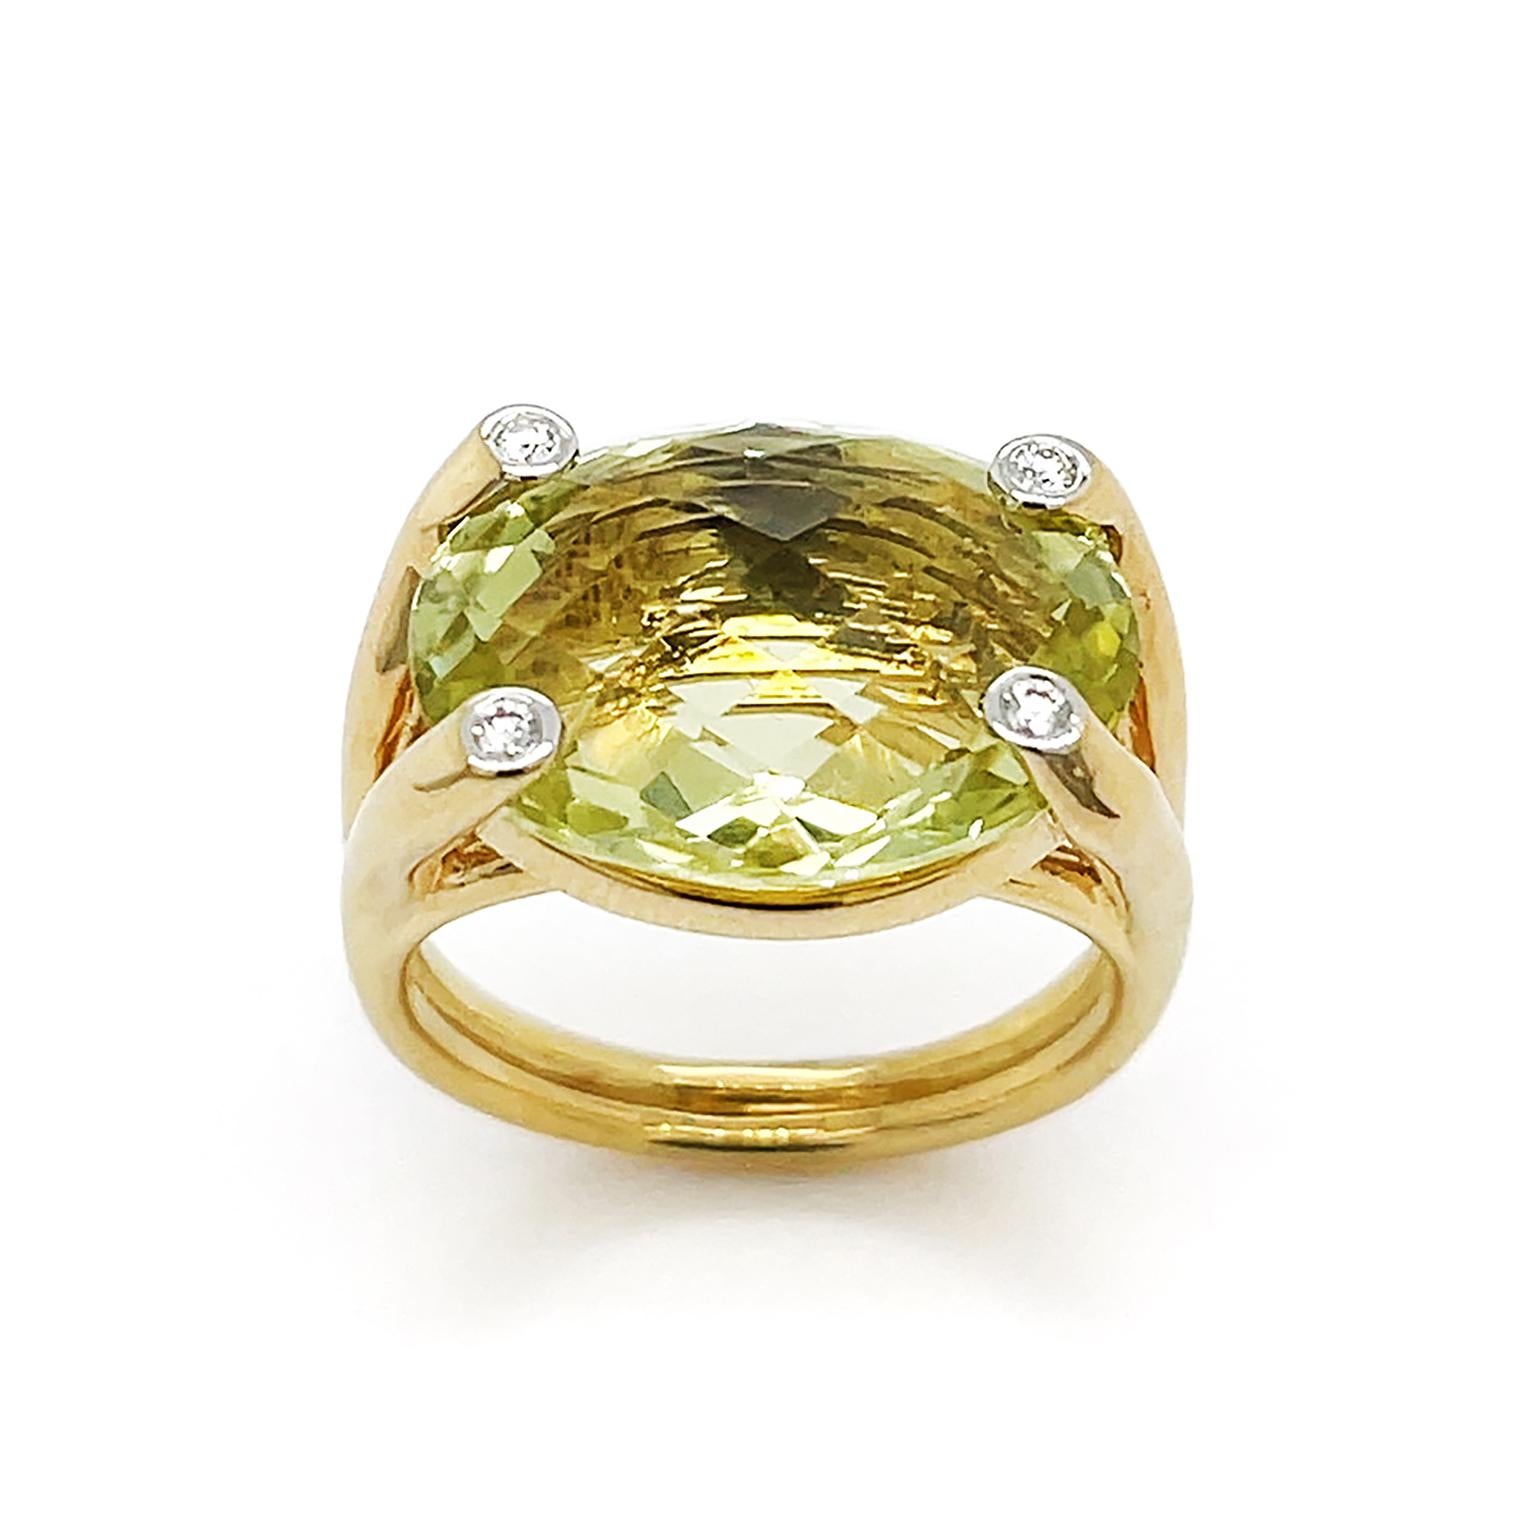 Der bonbonfarbene grüne Amethyst ist das Prunkstück. Ein ovaler Edelstein im Schachbrettschliff zeigt eine schillernde Palette von gelb-grünen Farbtönen aus seinem Inneren. Zacken aus 18 Karat Gelbgold, an deren Spitzen ein einzelner Diamant im